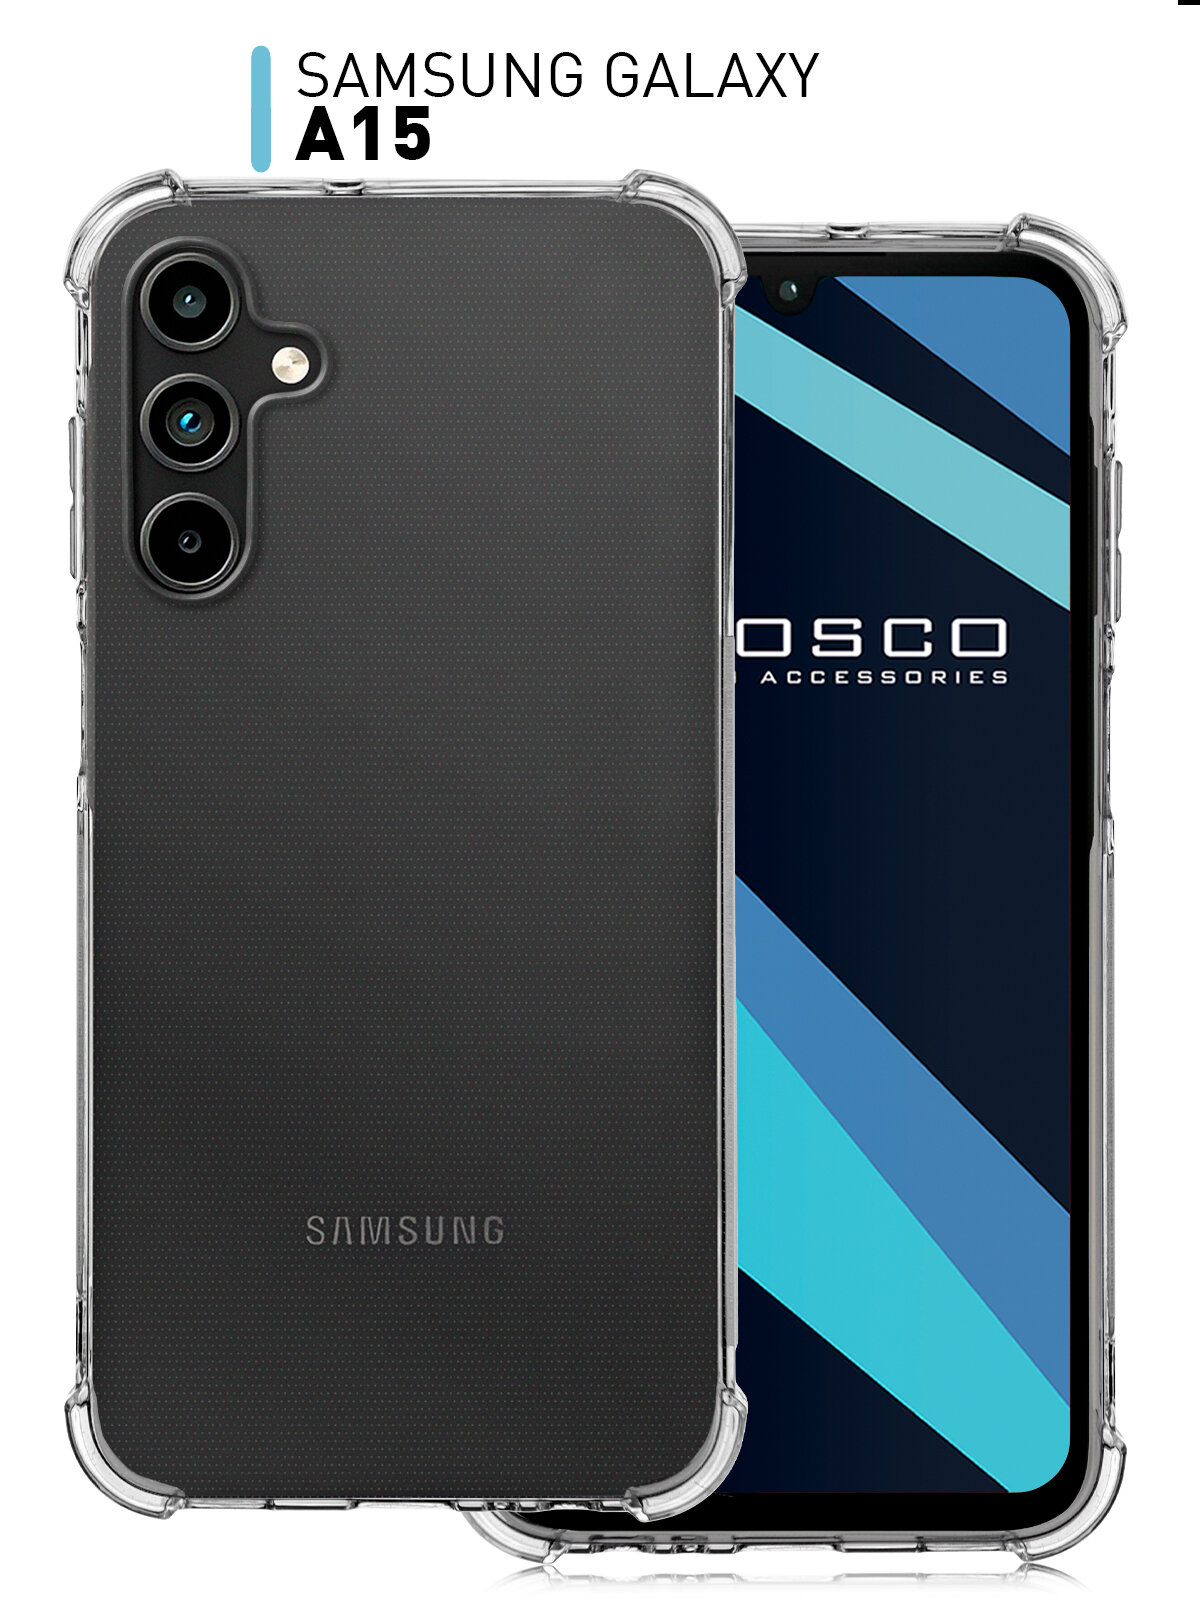 Противоударный чехол ROSCO на Samsung Galaxy A15 (Самсунг Галакси А15) усиленный силиконовый чехол защита модуля камер прозрачный чехол